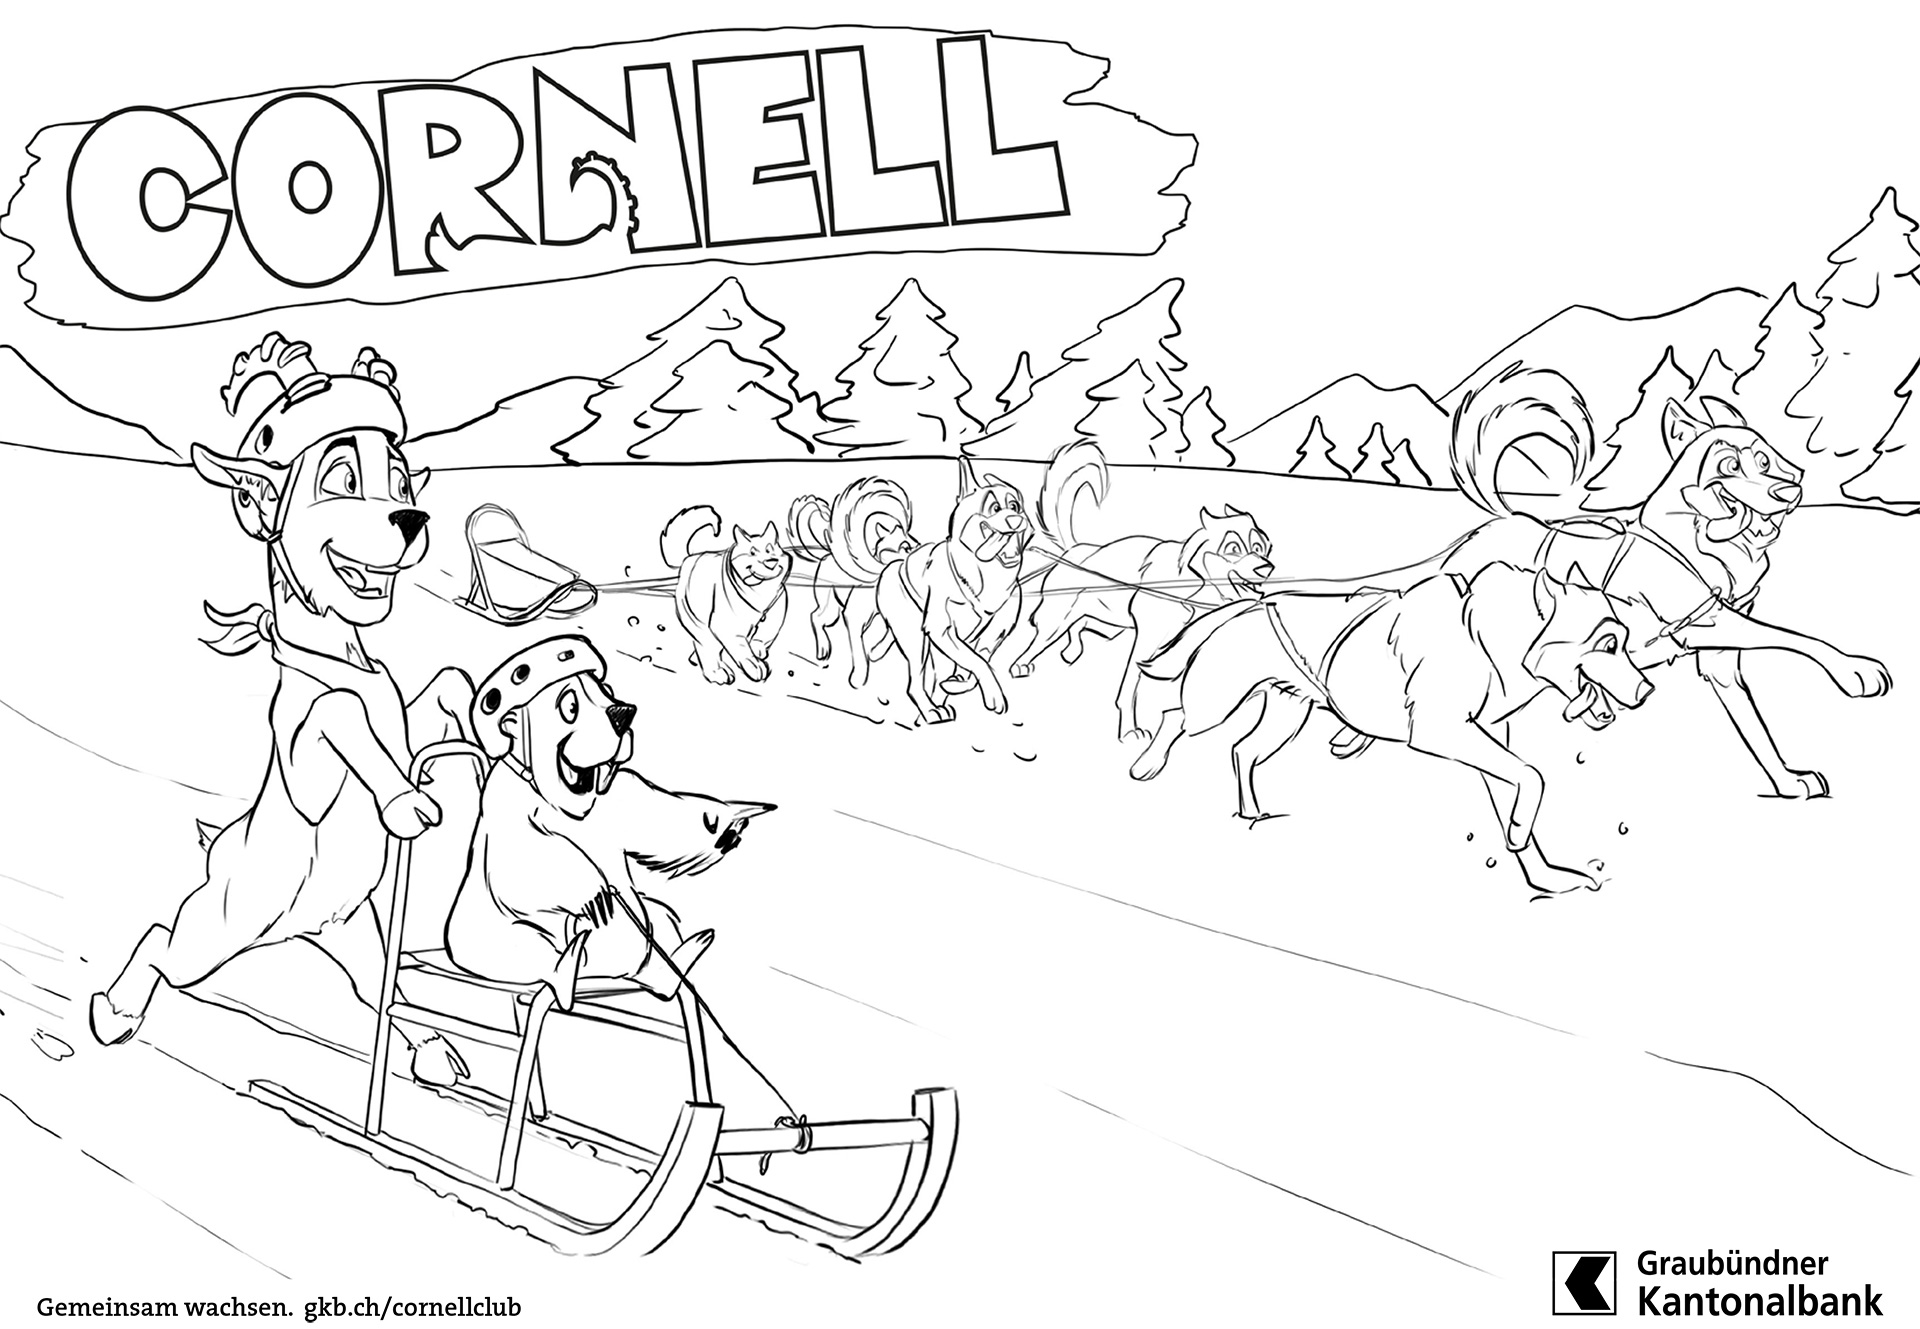 Cornell e la slitta degli husky